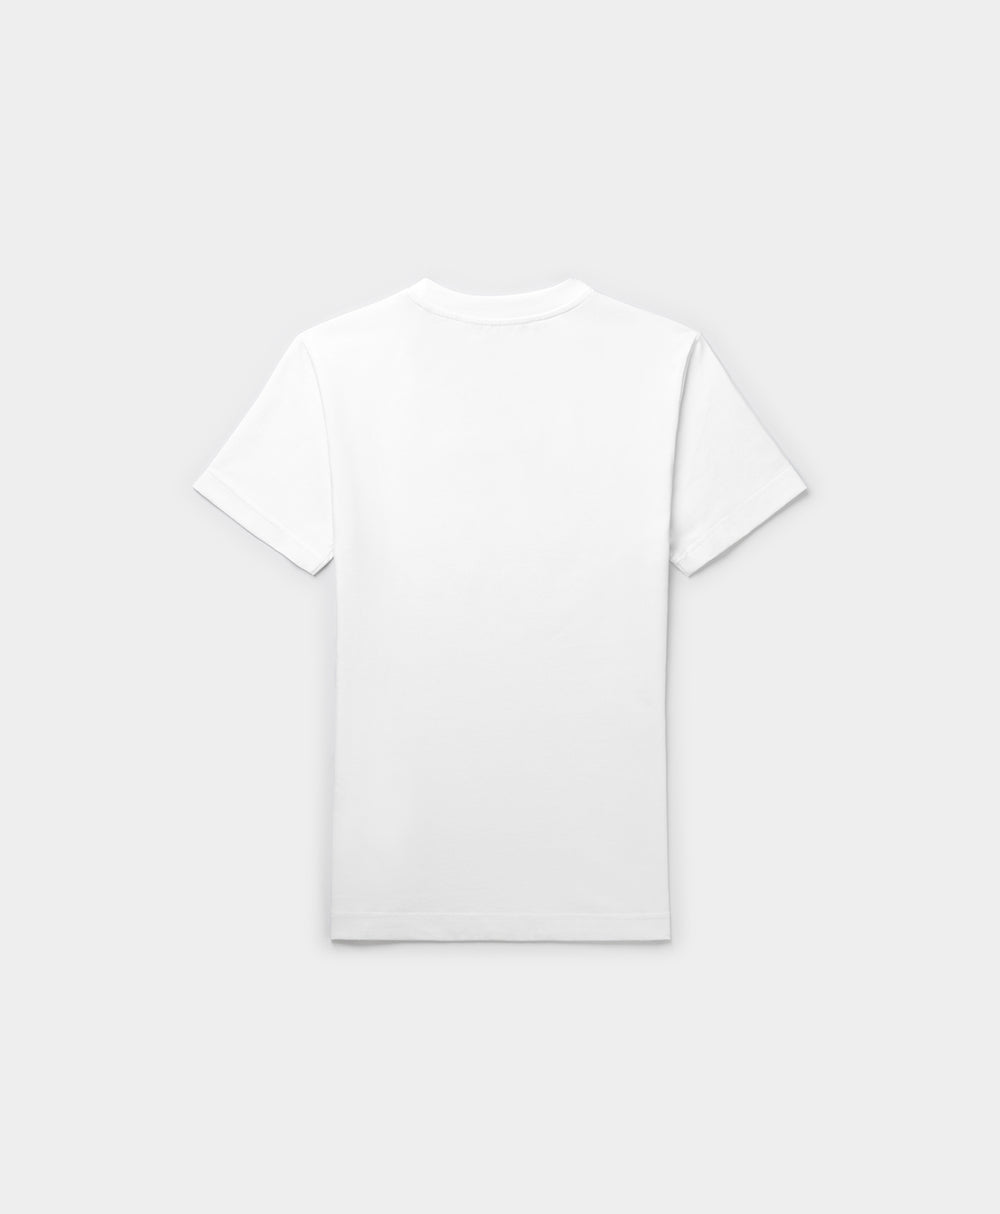 DP - White Emefa T-Shirt - Packshot - Rear